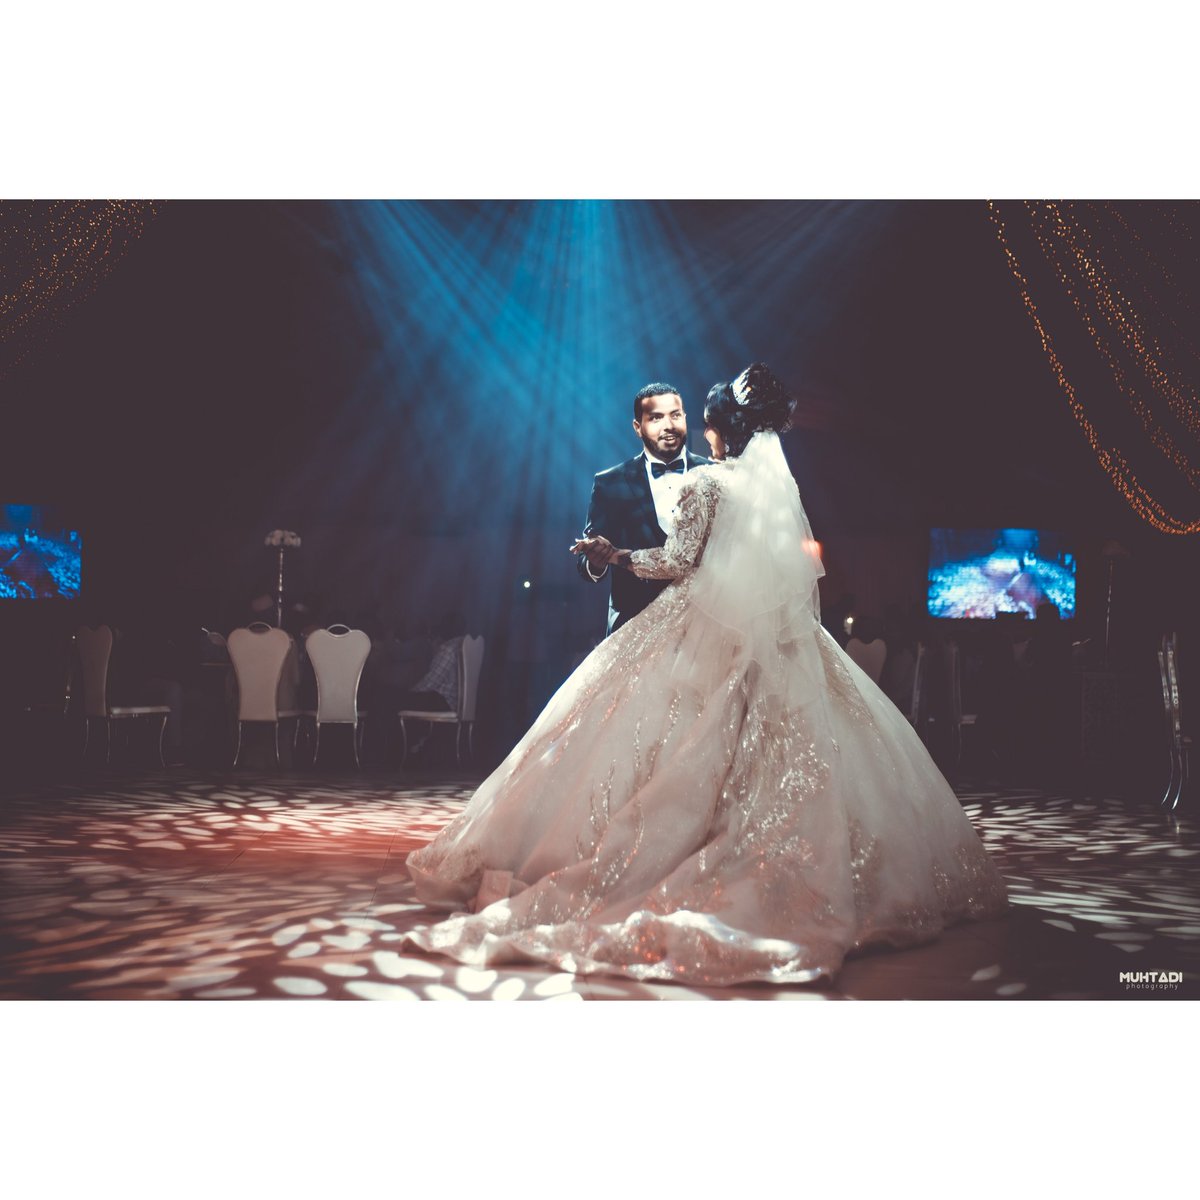 Moments 💕

#wedding #weddingphotography #weddingstyle #weddingmoment #dayoflove #love #couple #couplegoals #amazing #indoorphotography #nikon #nikontop #sudan